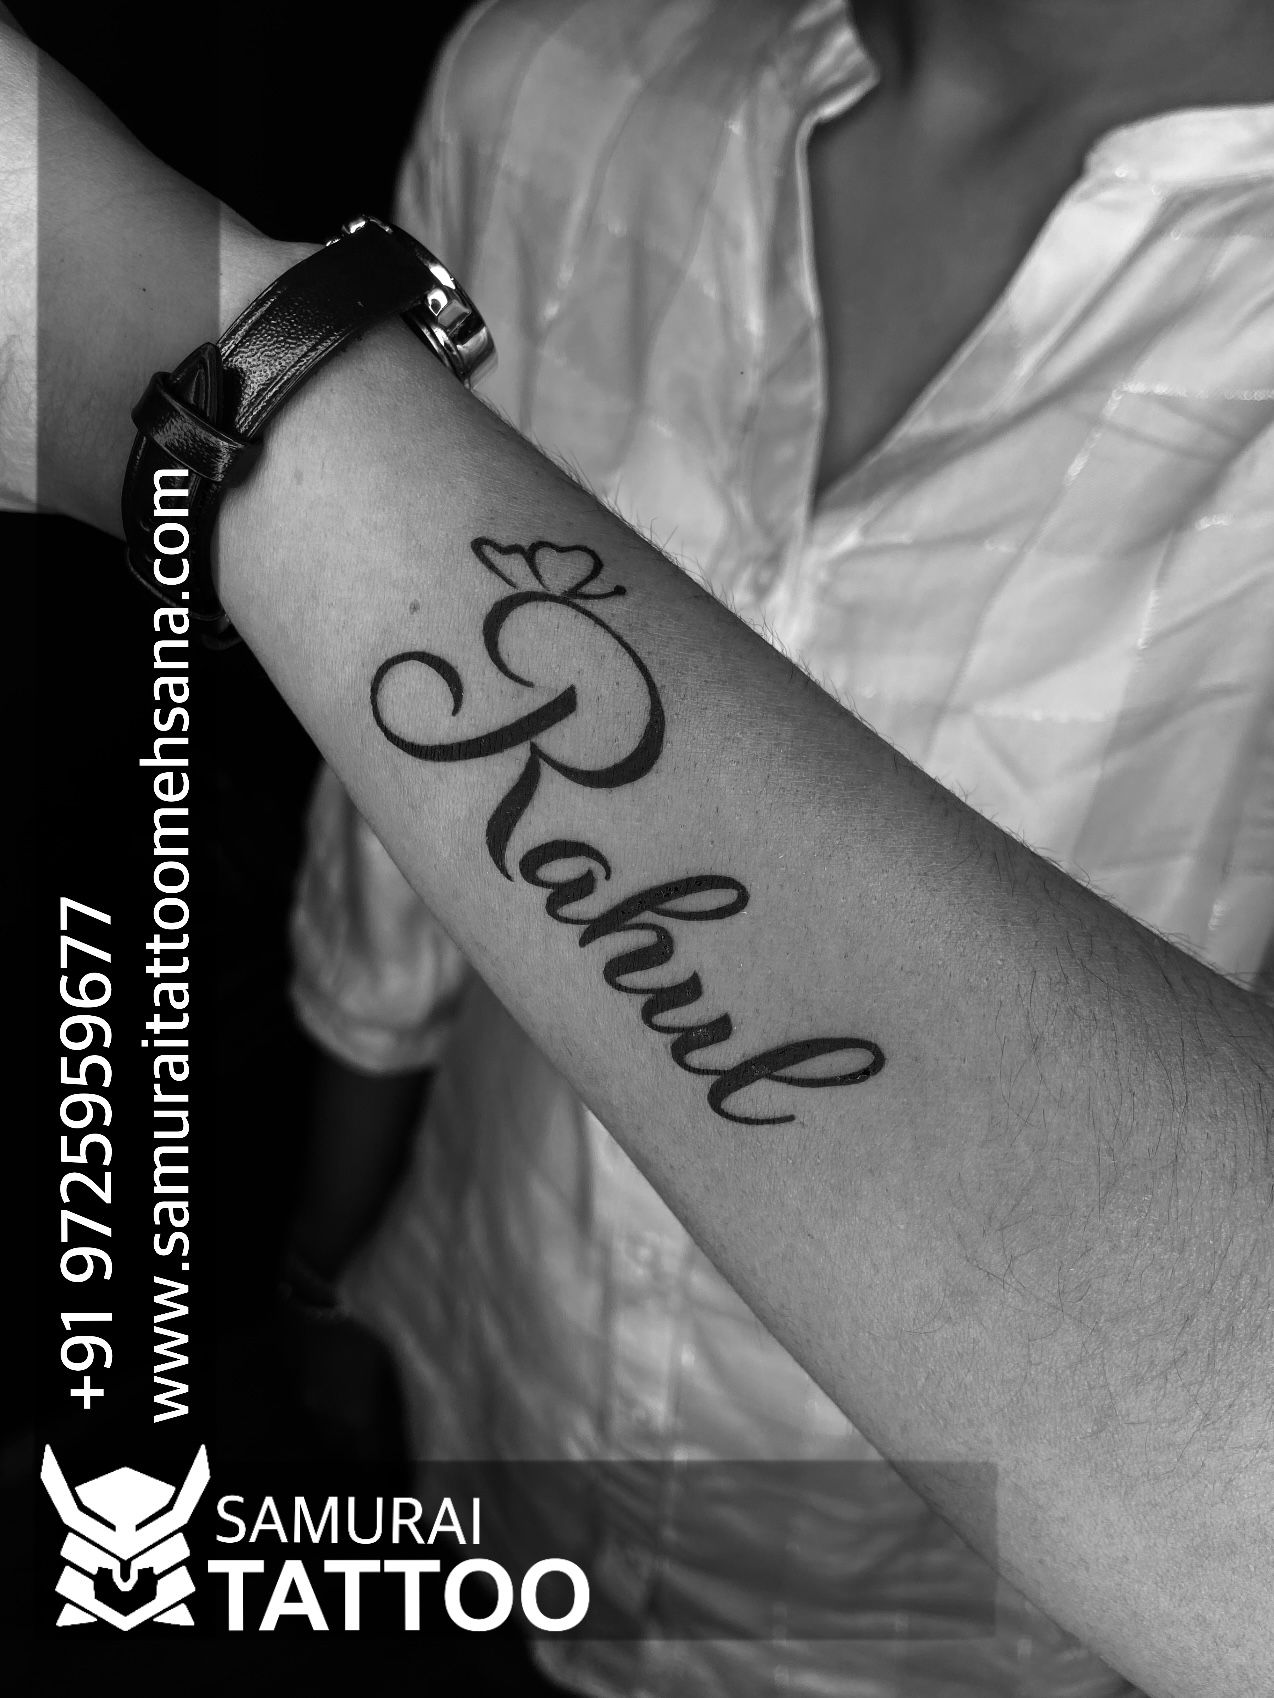 Rahul Name Tattoo rahul name tattoo contact us 09899473688  Name tattoos  on wrist Tattoos Feather tattoos